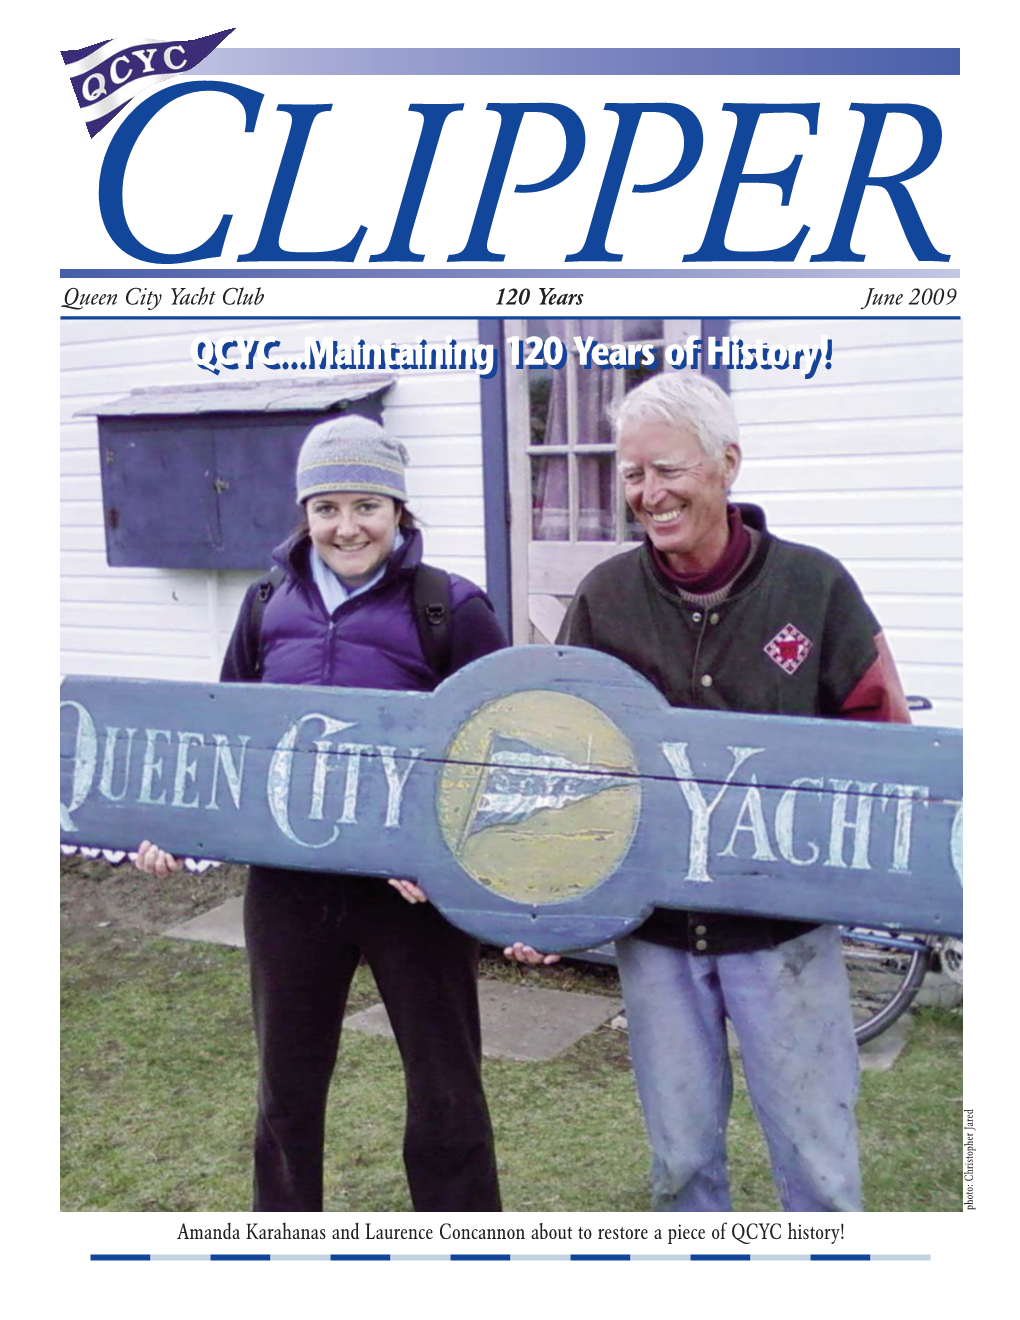 4628 June Clipper QCYC:May 2005 Clipper